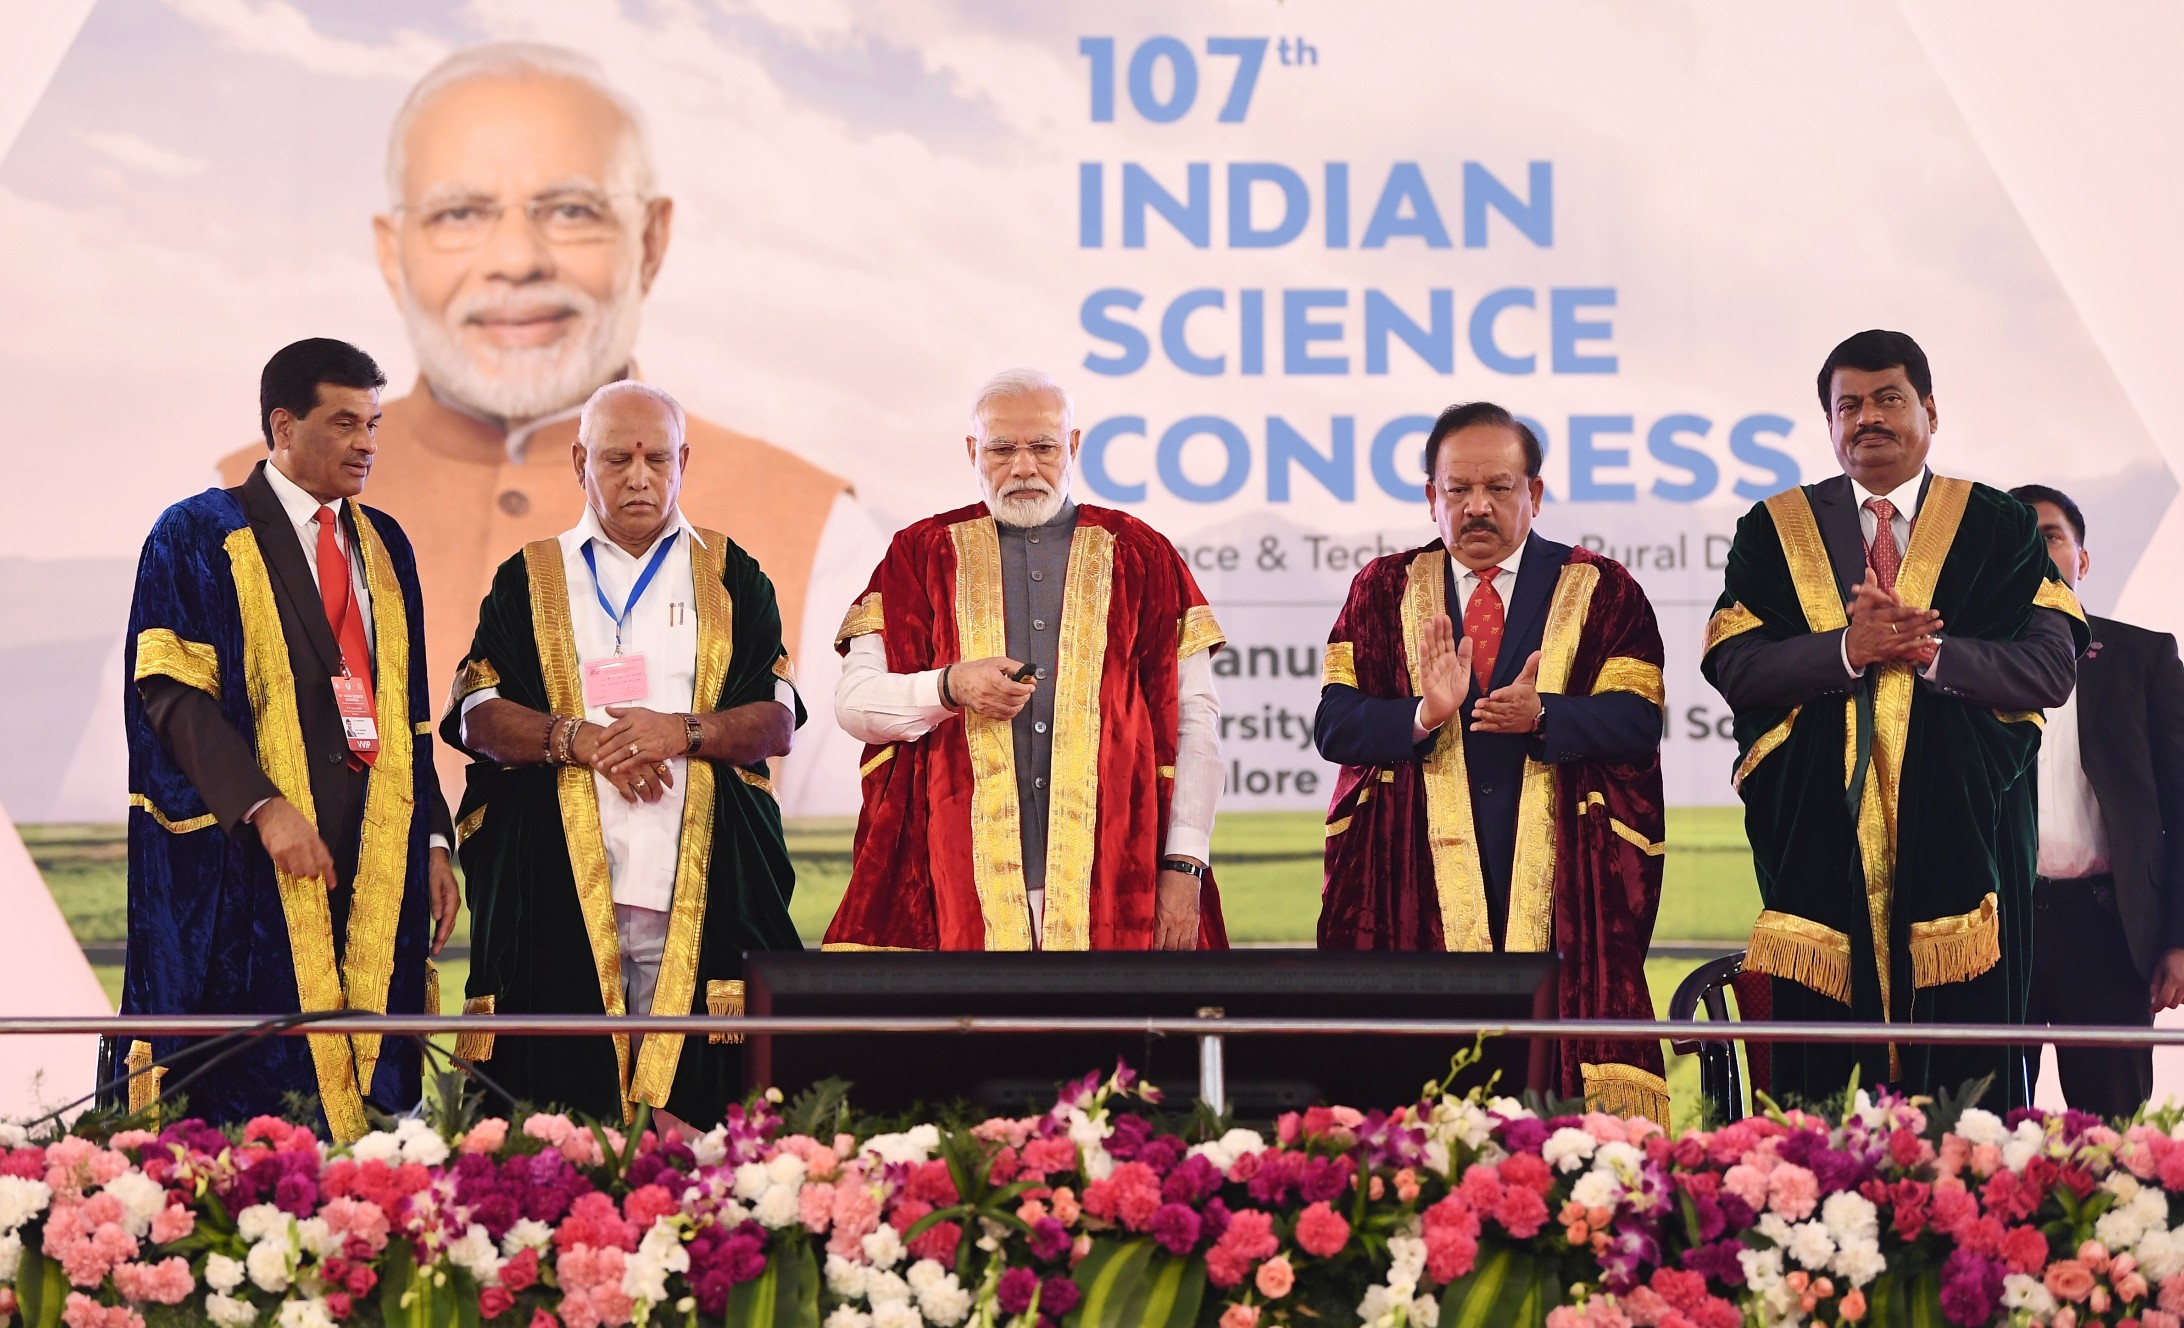 سائنس کانگریس کے رہنماؤں نے بھارت کو علم سے بھرپور معیشت بنانے پر تبادلہ خیال کیا